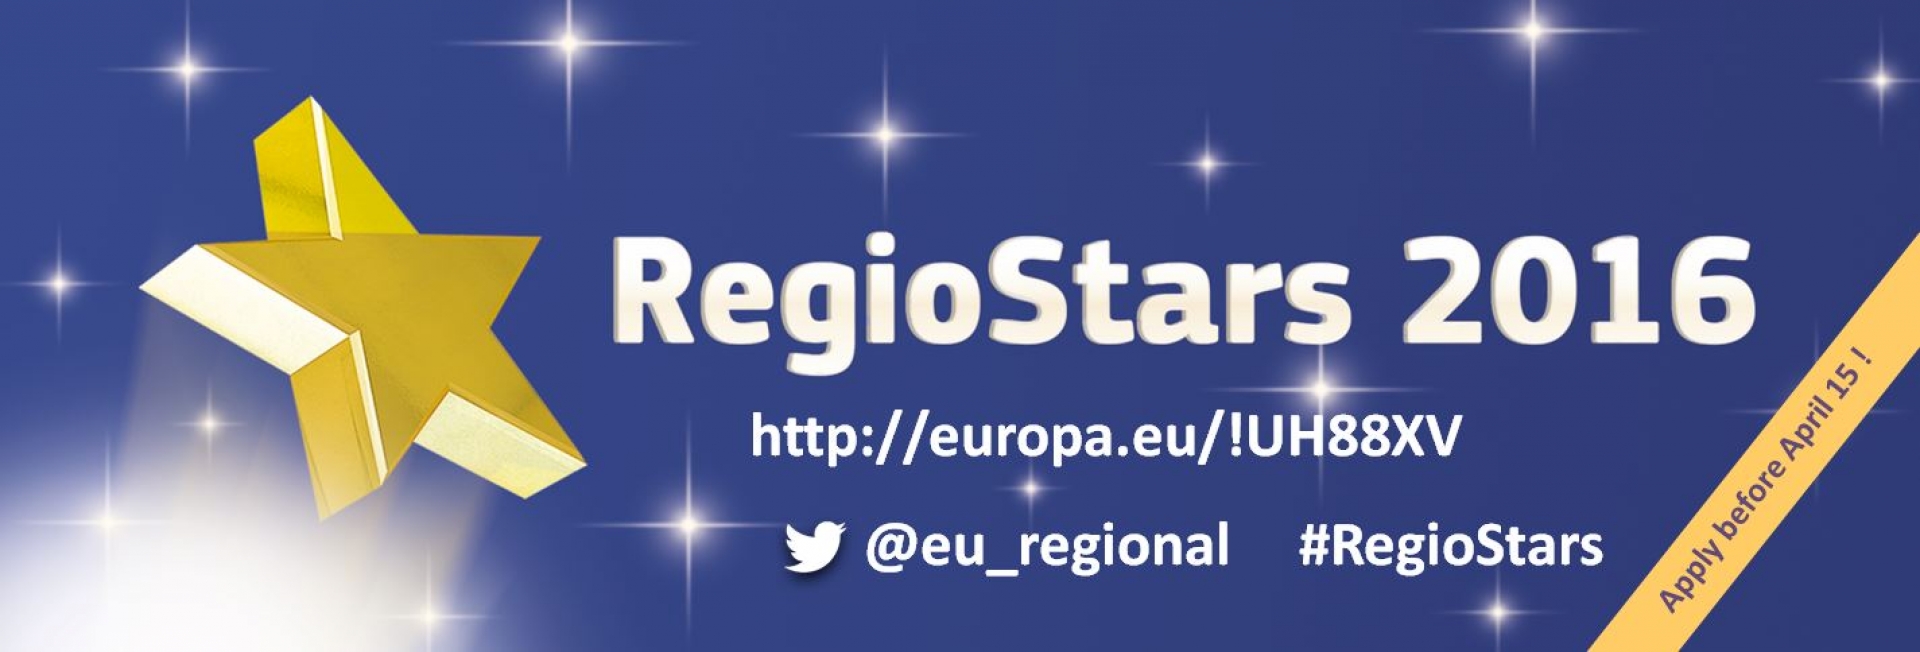 Regio Stars 2016